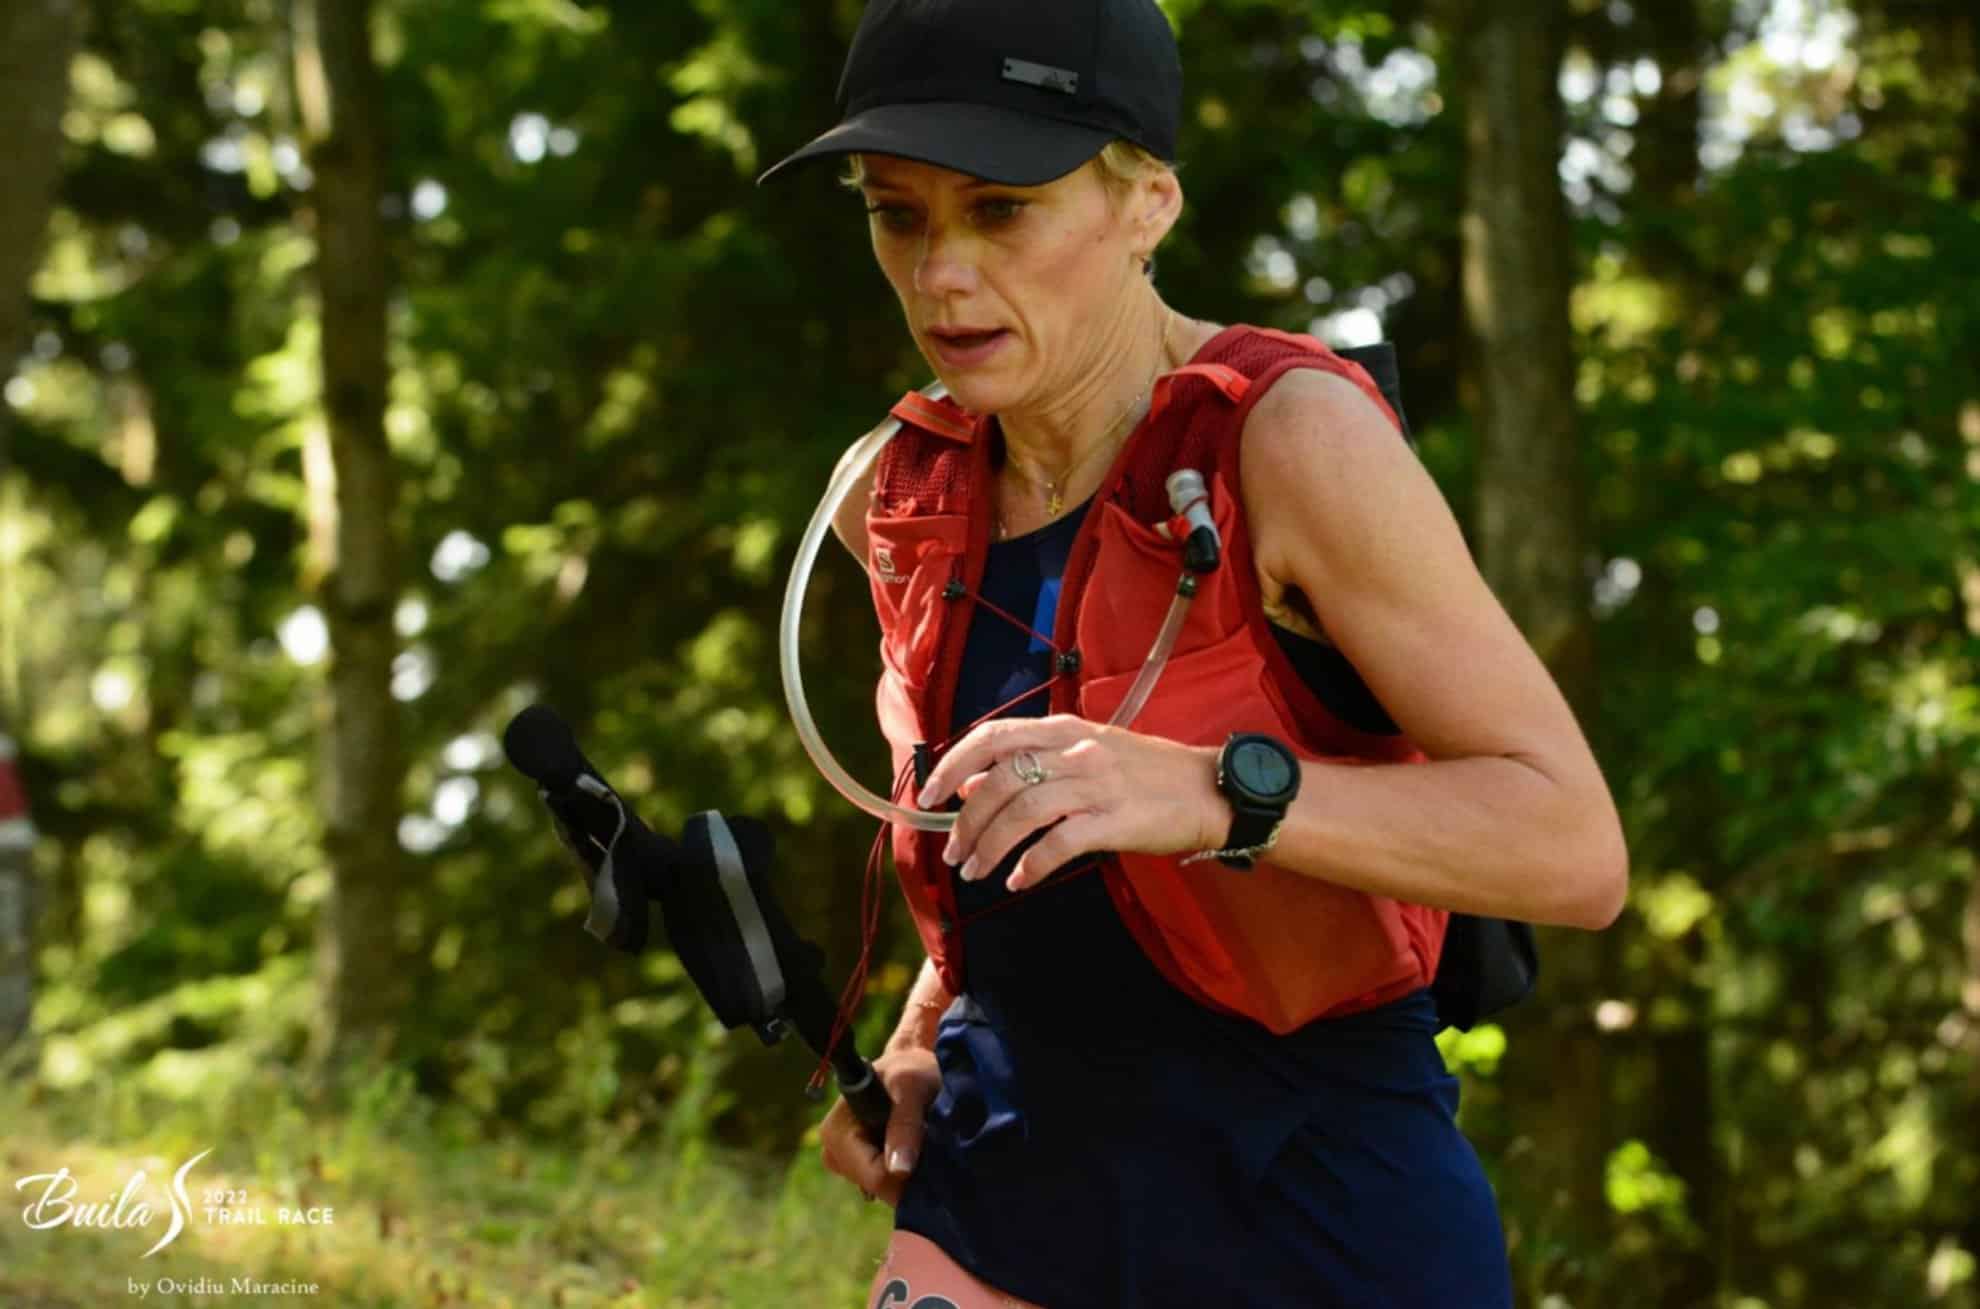 sibianca ghizela vonica, campioană europeană la alergare montană: „românia oferă cele mai spectaculoase peisaje”